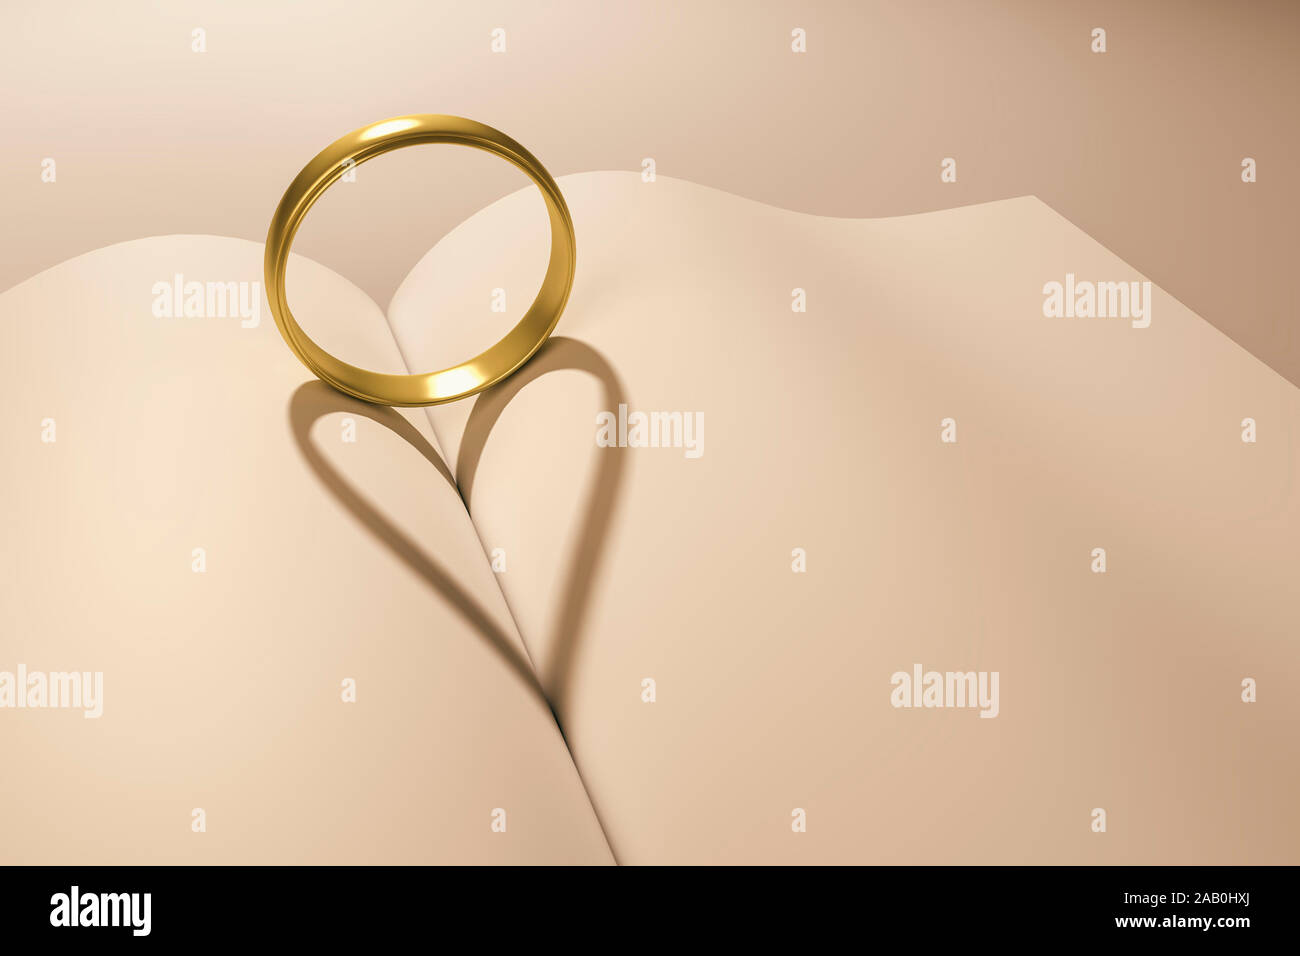 Ein goldener Ring, der einen herzfoermigen Schatten auf ein Buch wirft Stock Photo